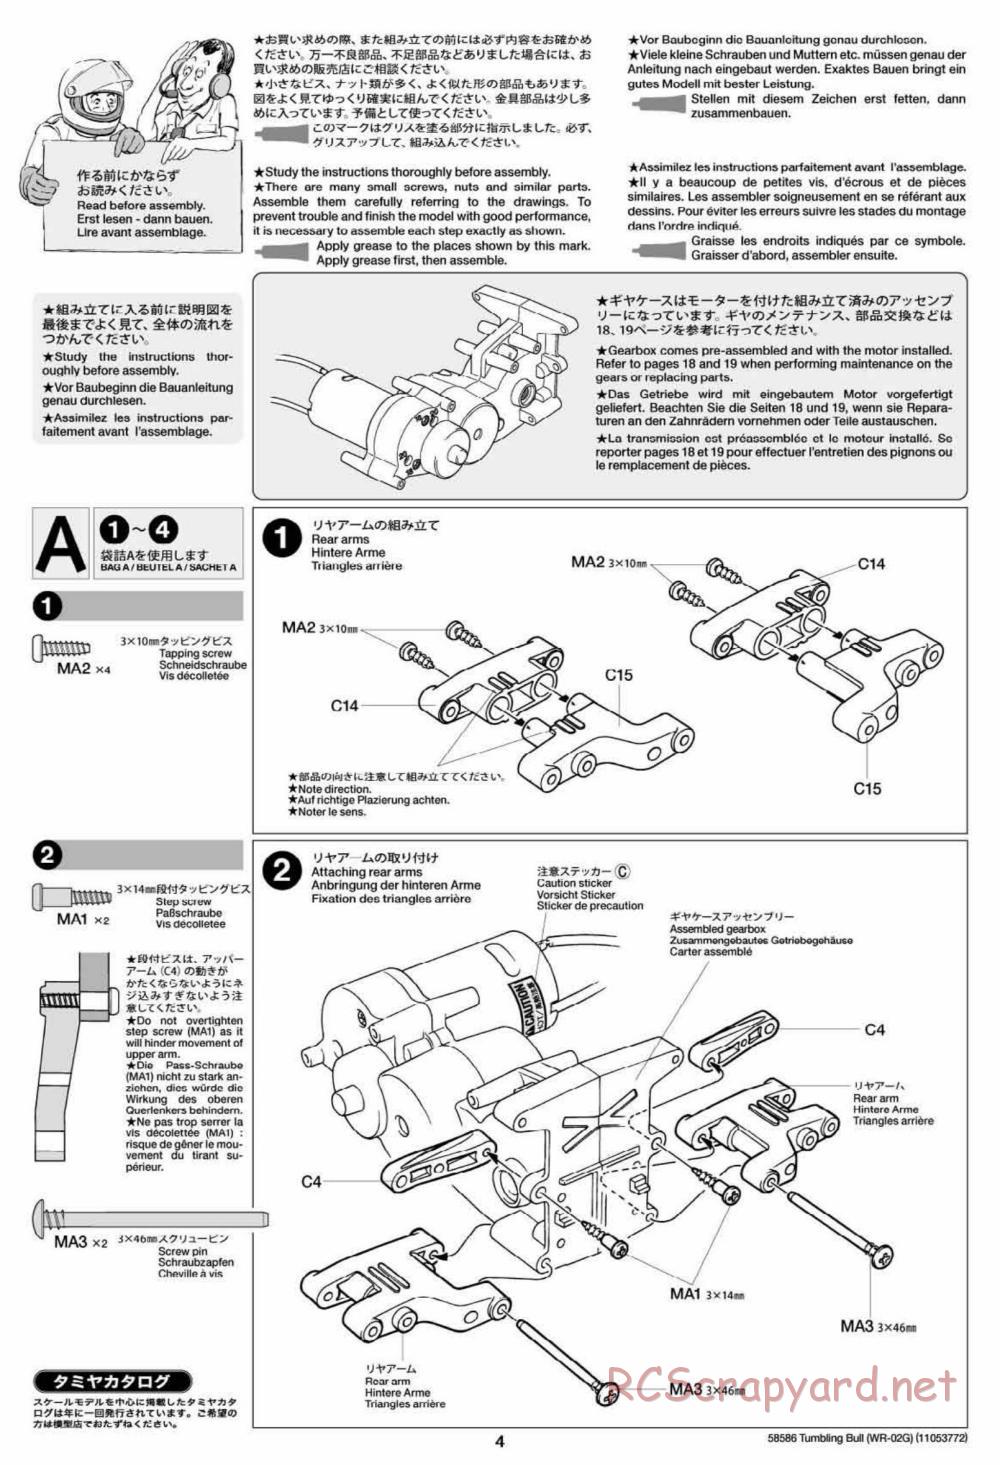 Tamiya - Tumbling Bull Chassis - Manual - Page 4